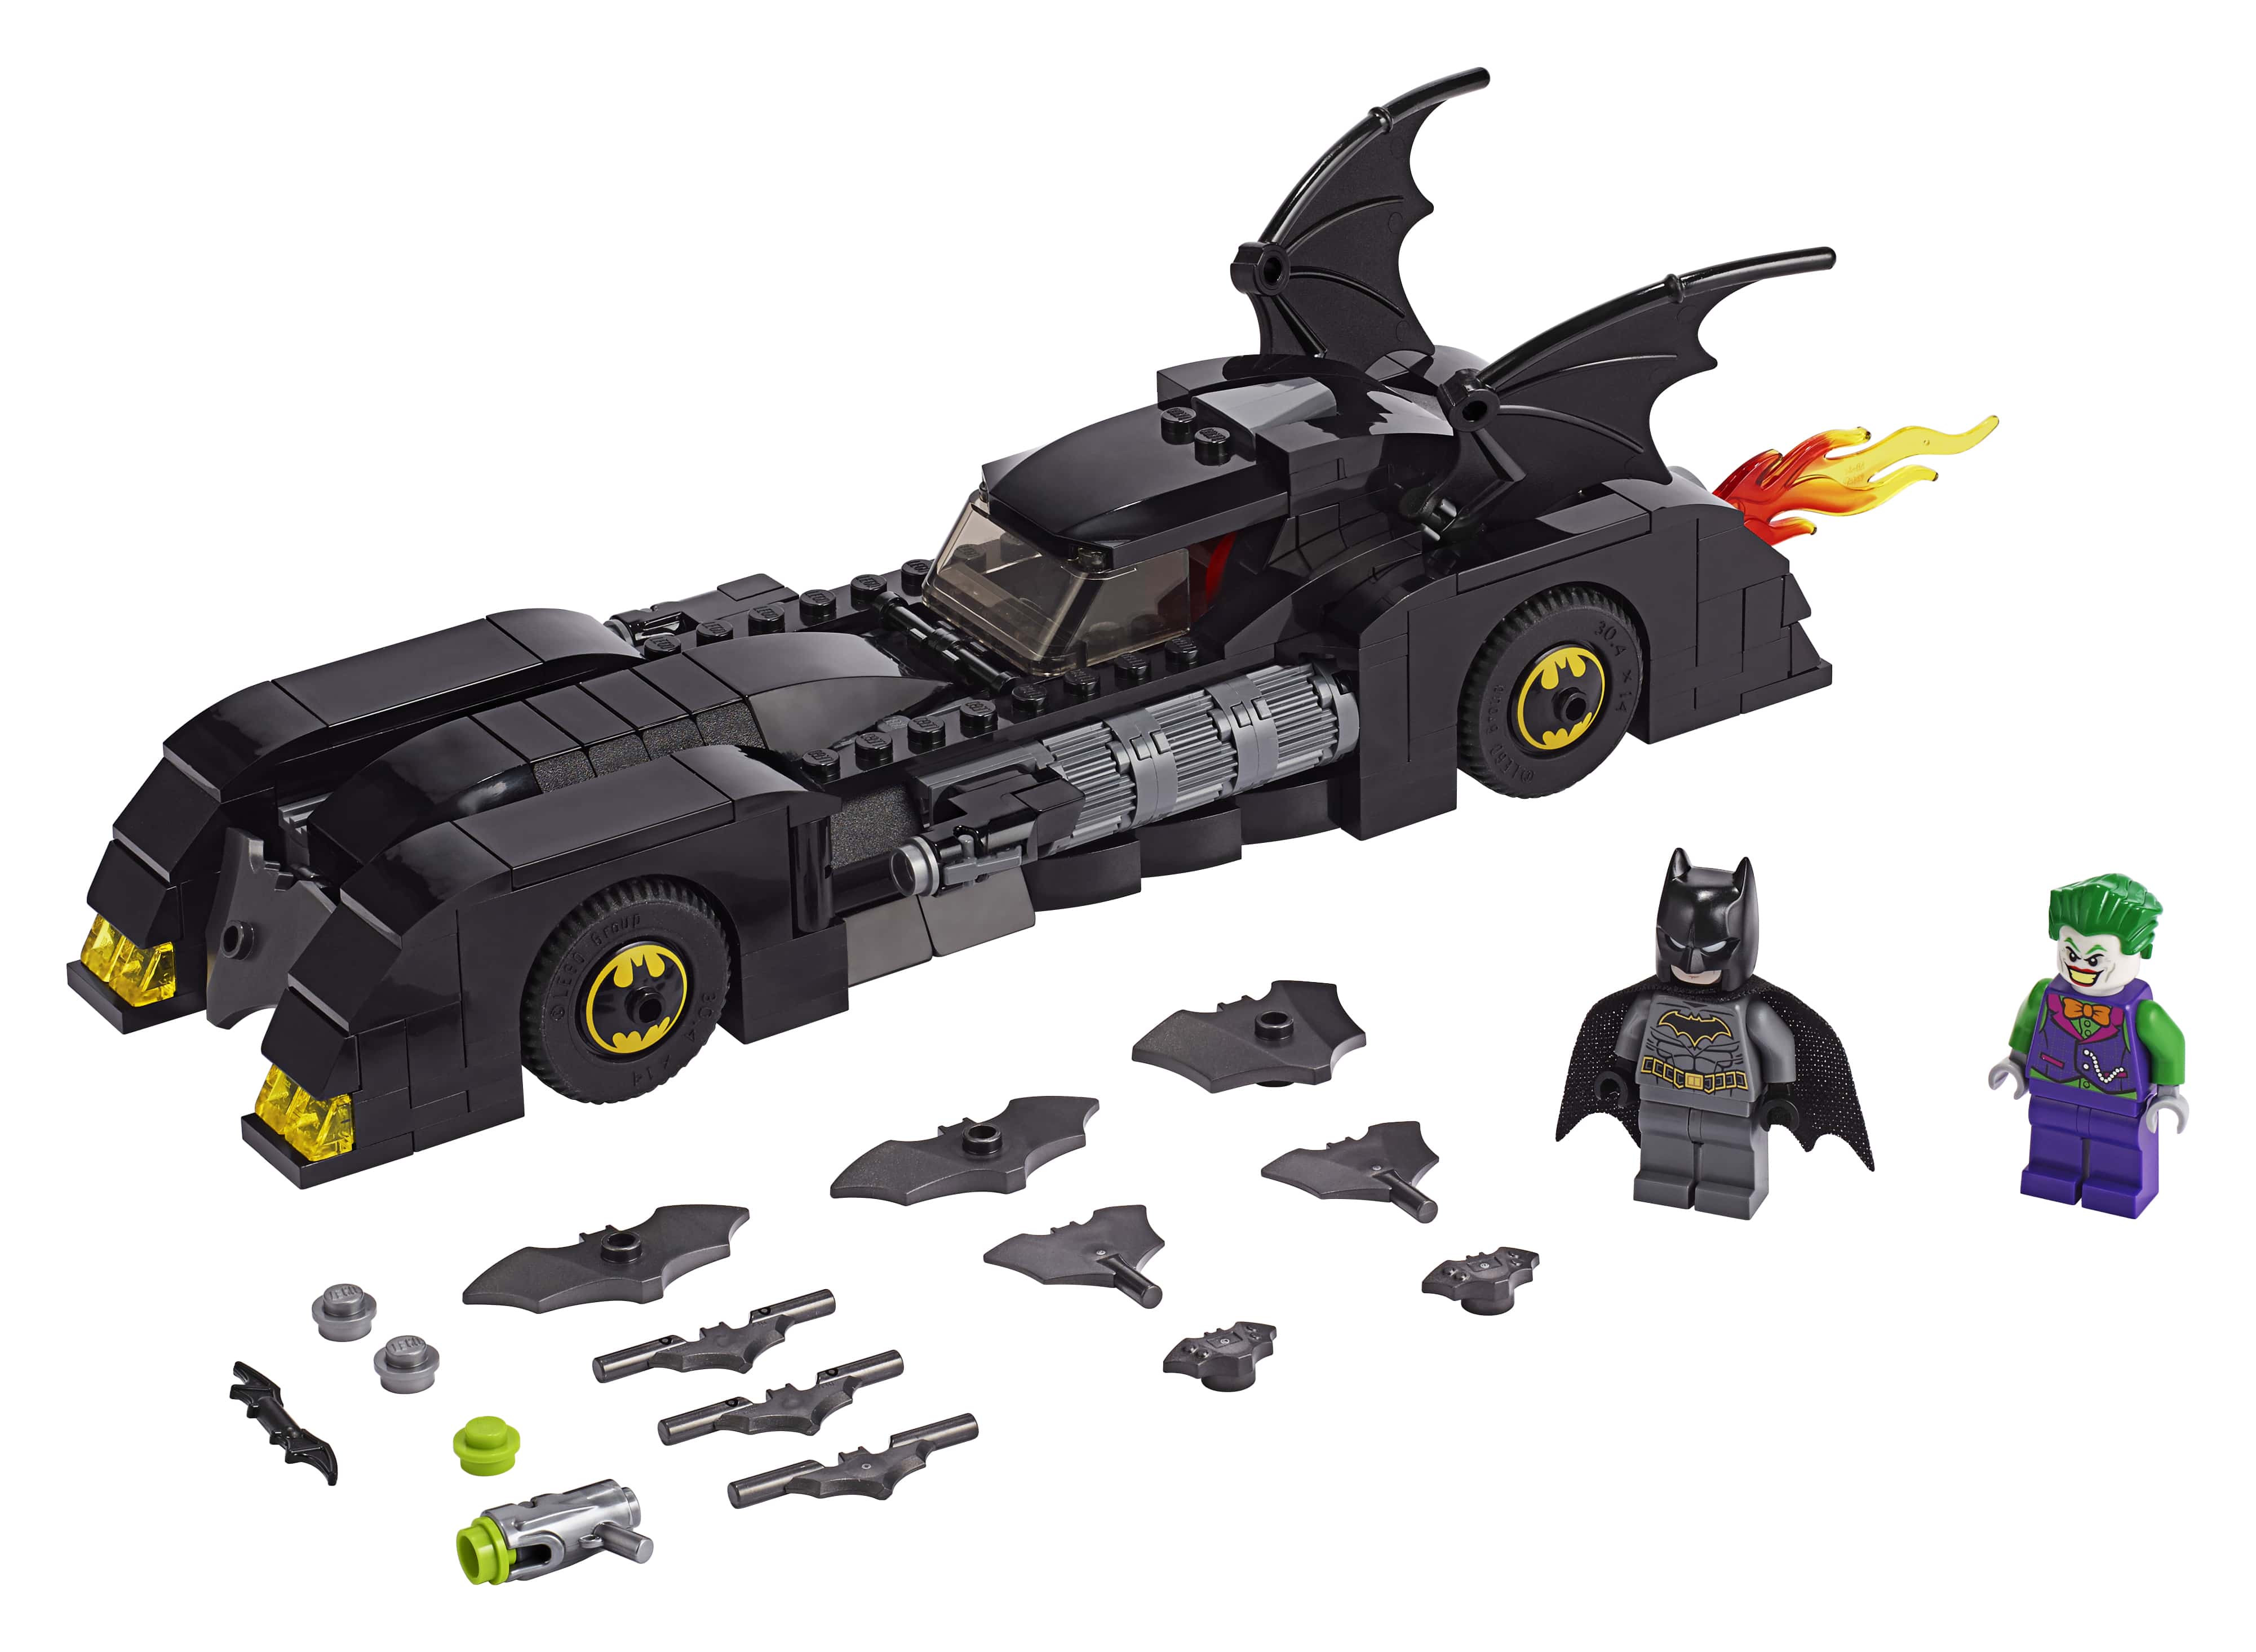 LEGO Batman Sets